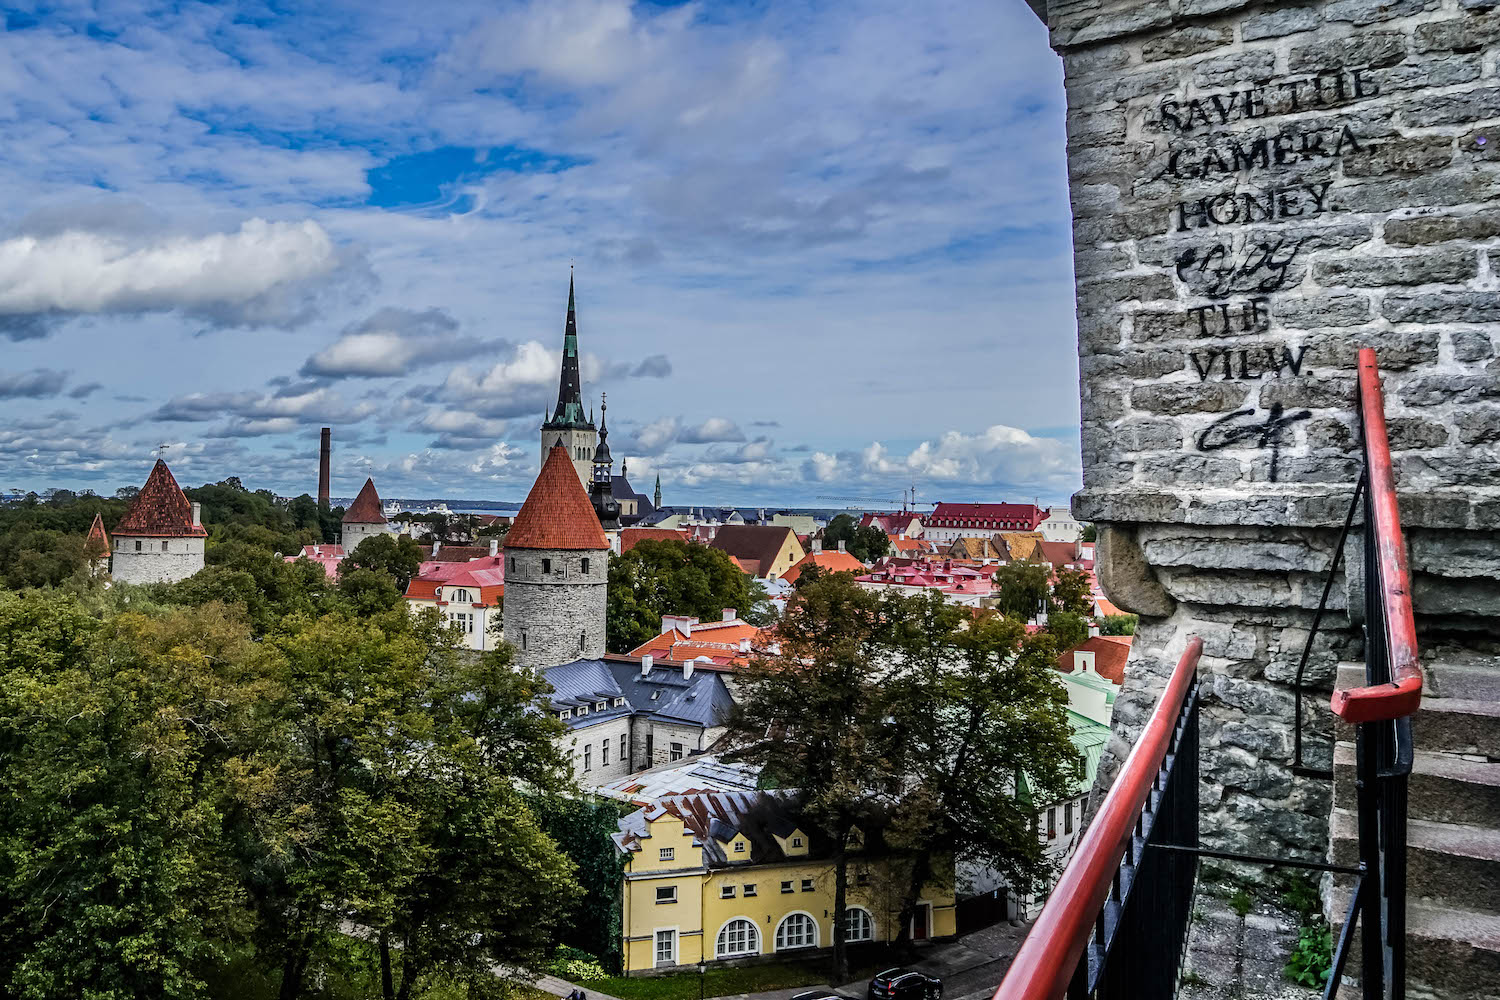 30 Fun Things To Do In Tallinn: Estonia’s Medieval-Meets-Modern Capital!